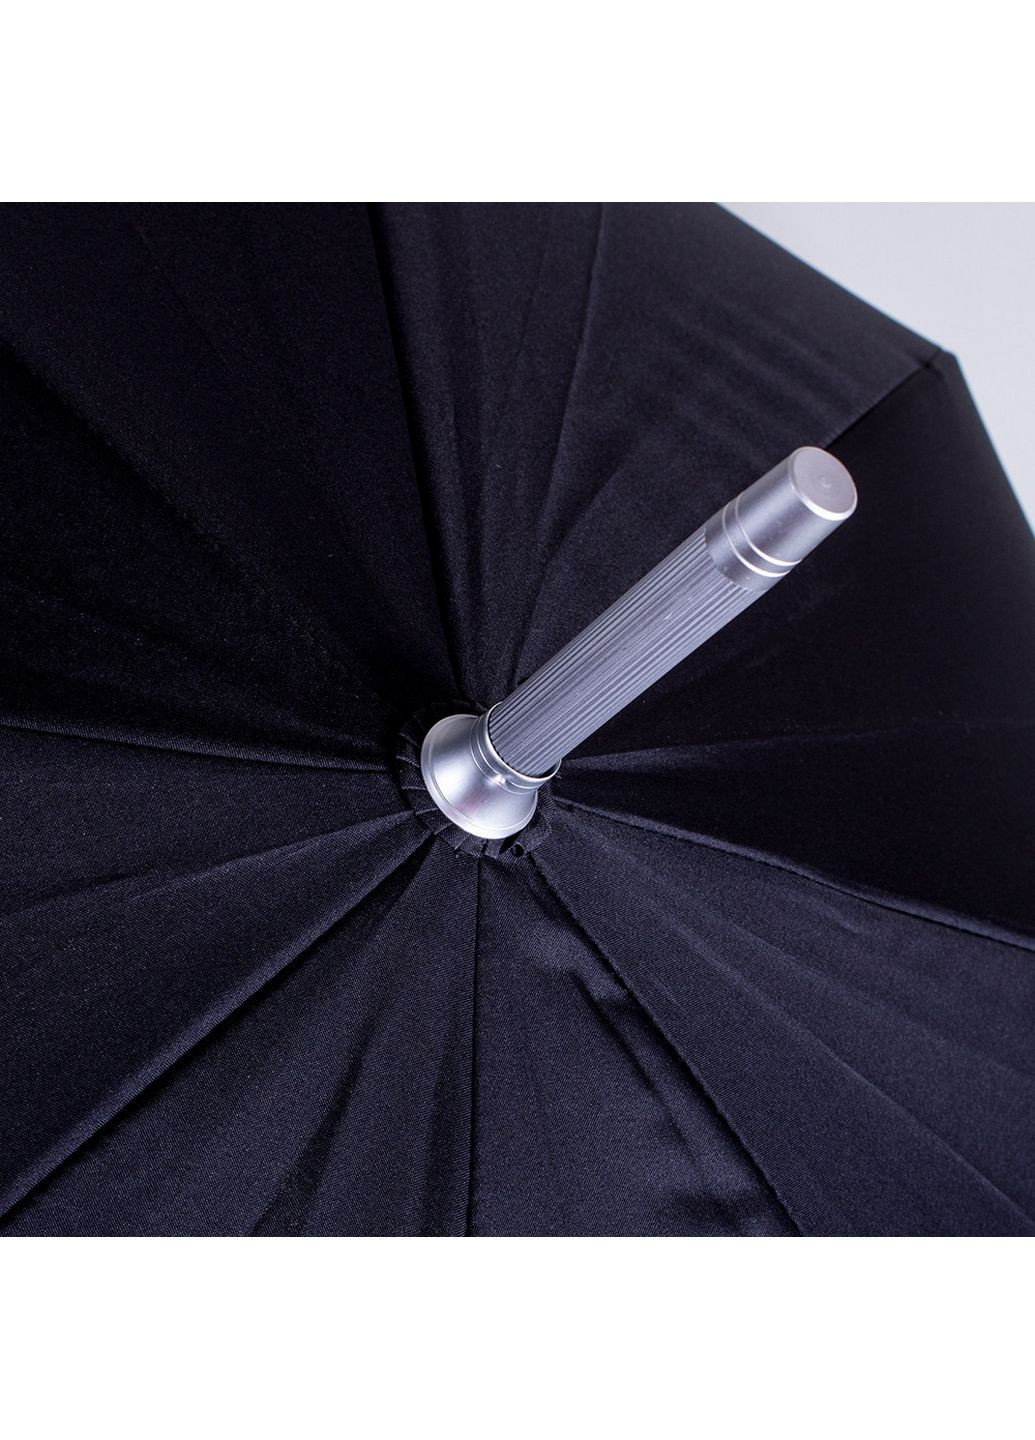 Мужской зонт-трость полуавтомат FARE (282595162)